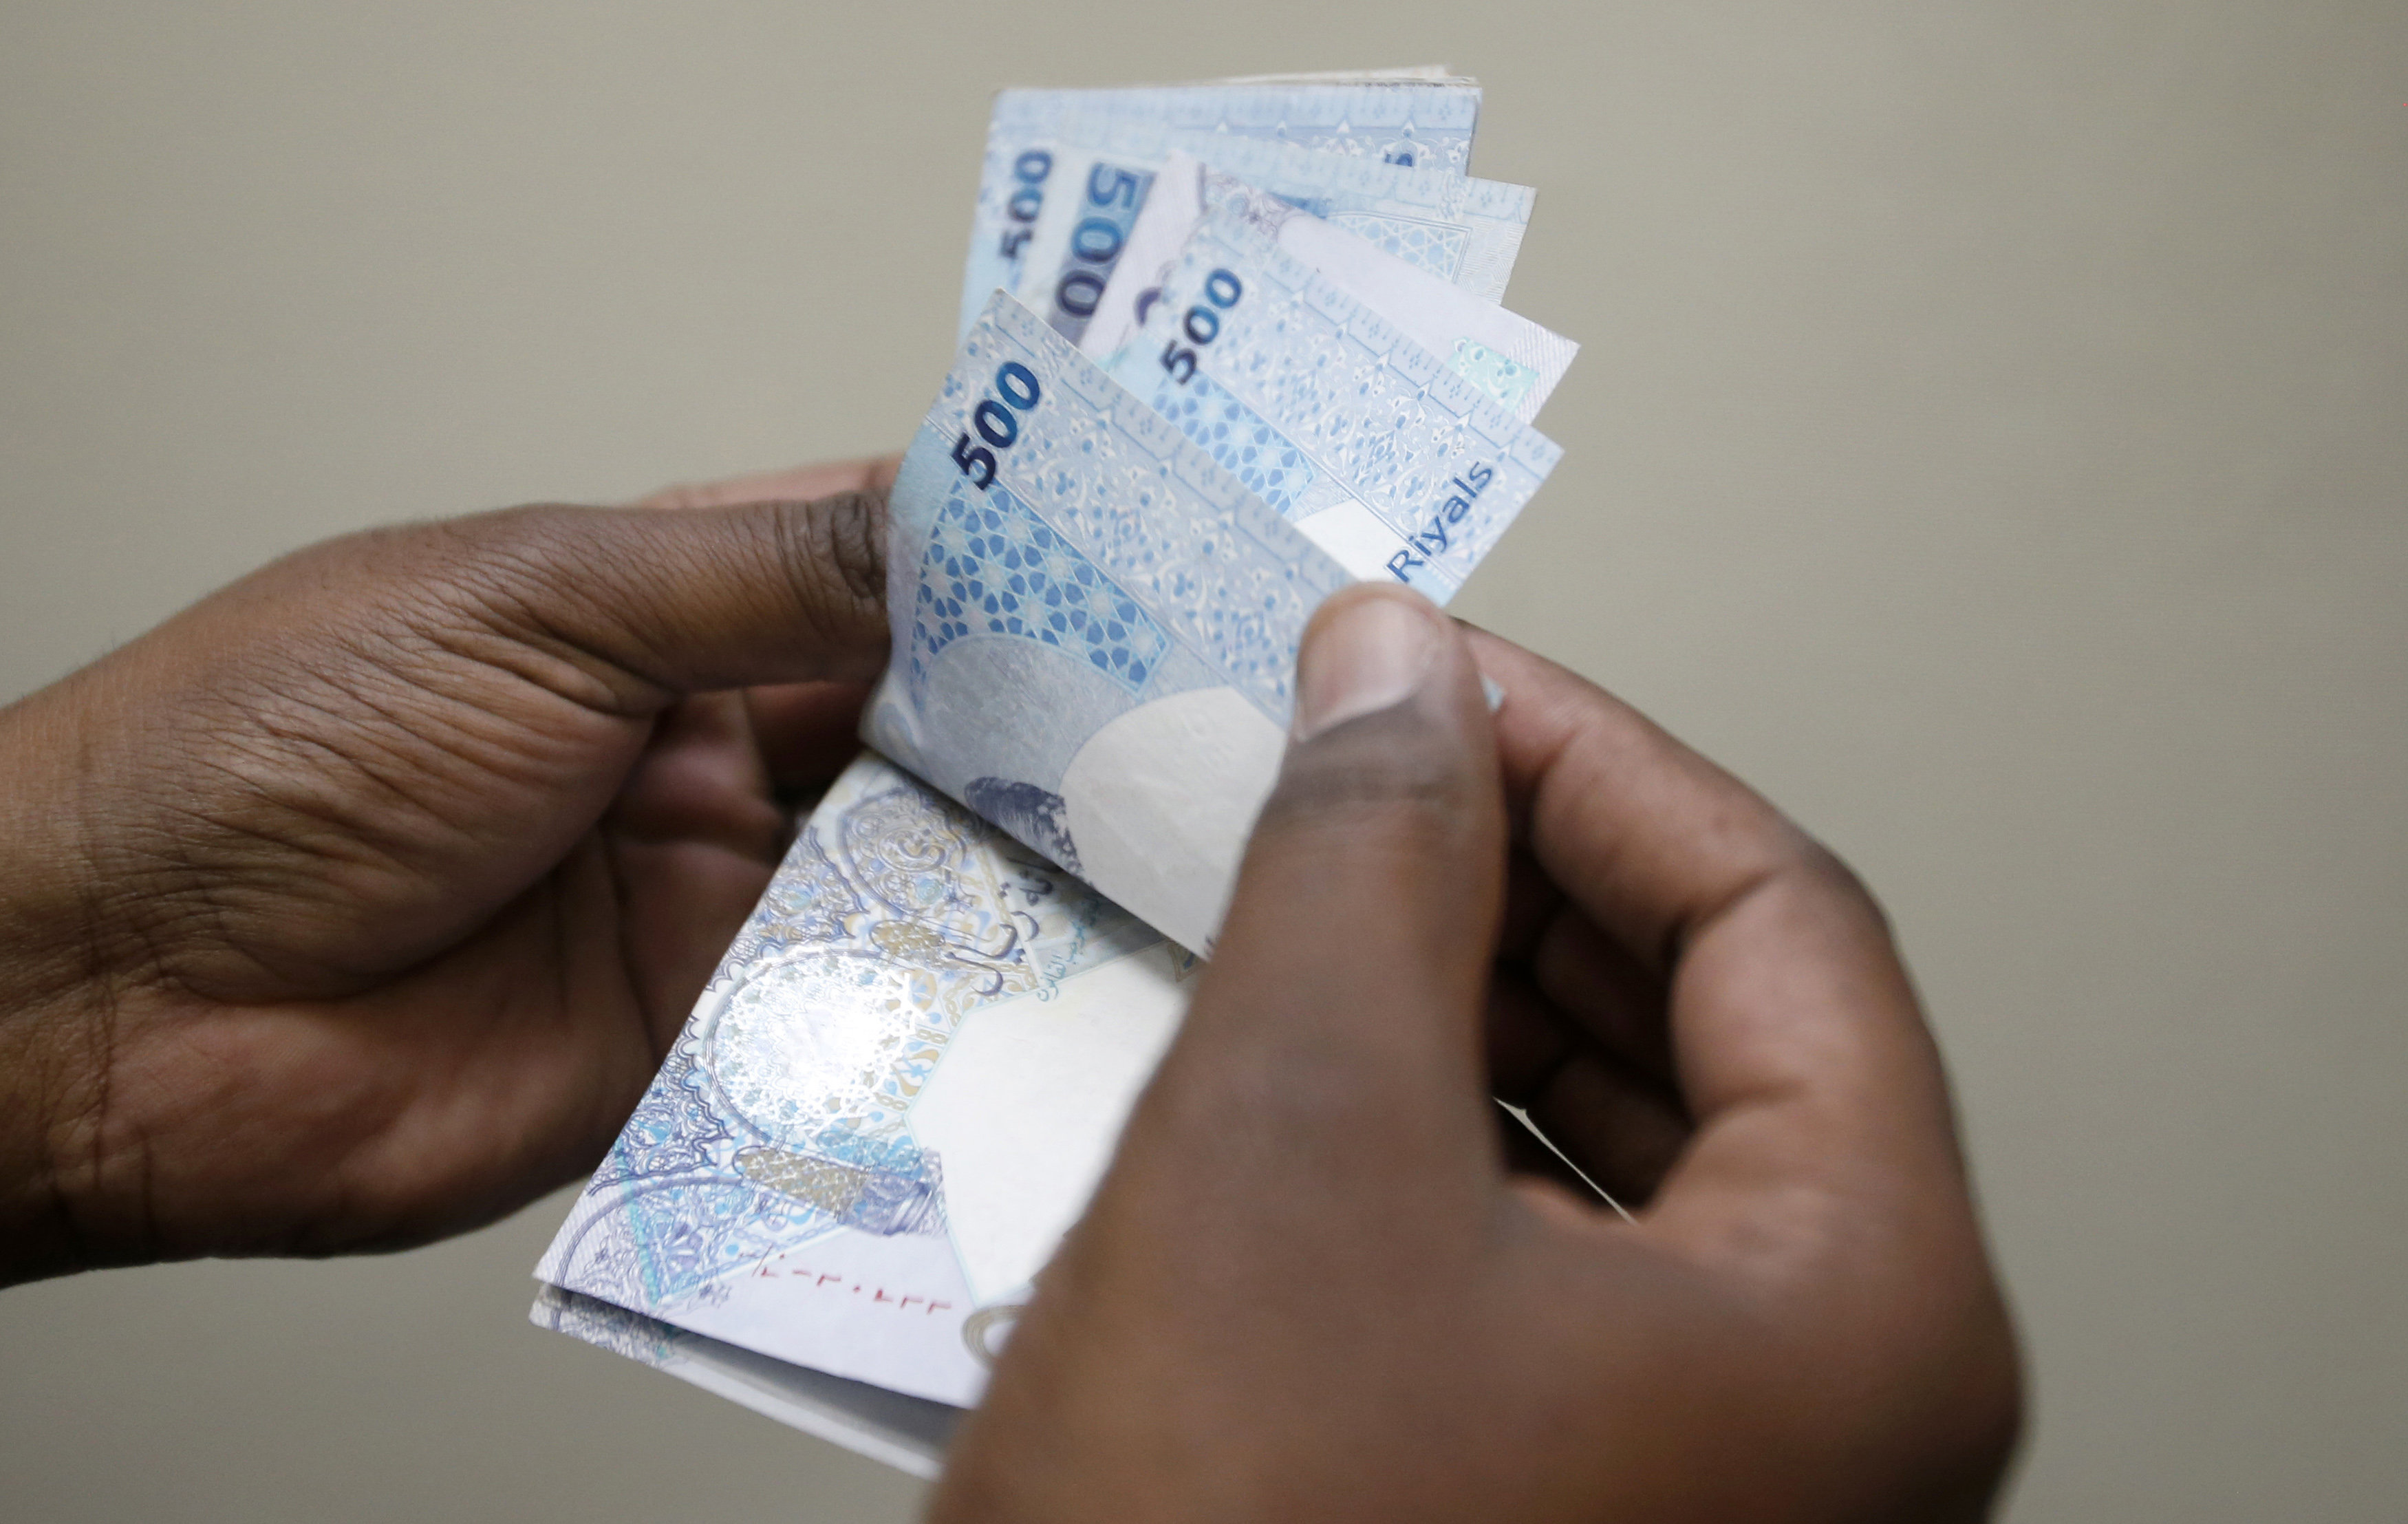 أزمة العملة في دول الخليج: كيف الخروج من المستنقع؟ | Brookings